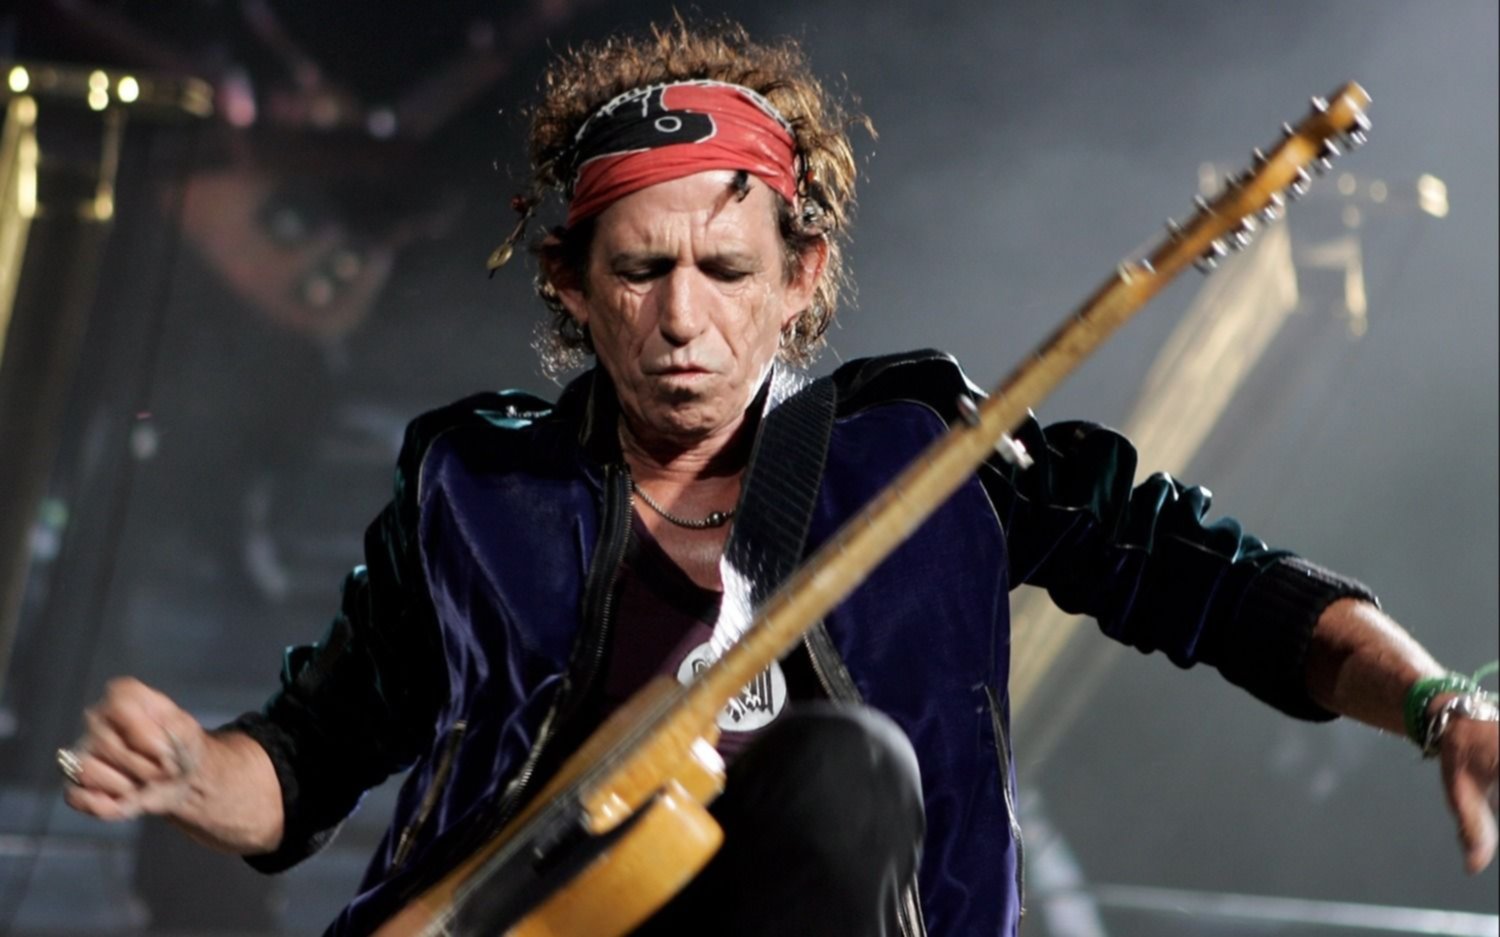 ¿Rolling Stones llega su fin? "Esta gira podría ser la última", afirmó Keith Richard